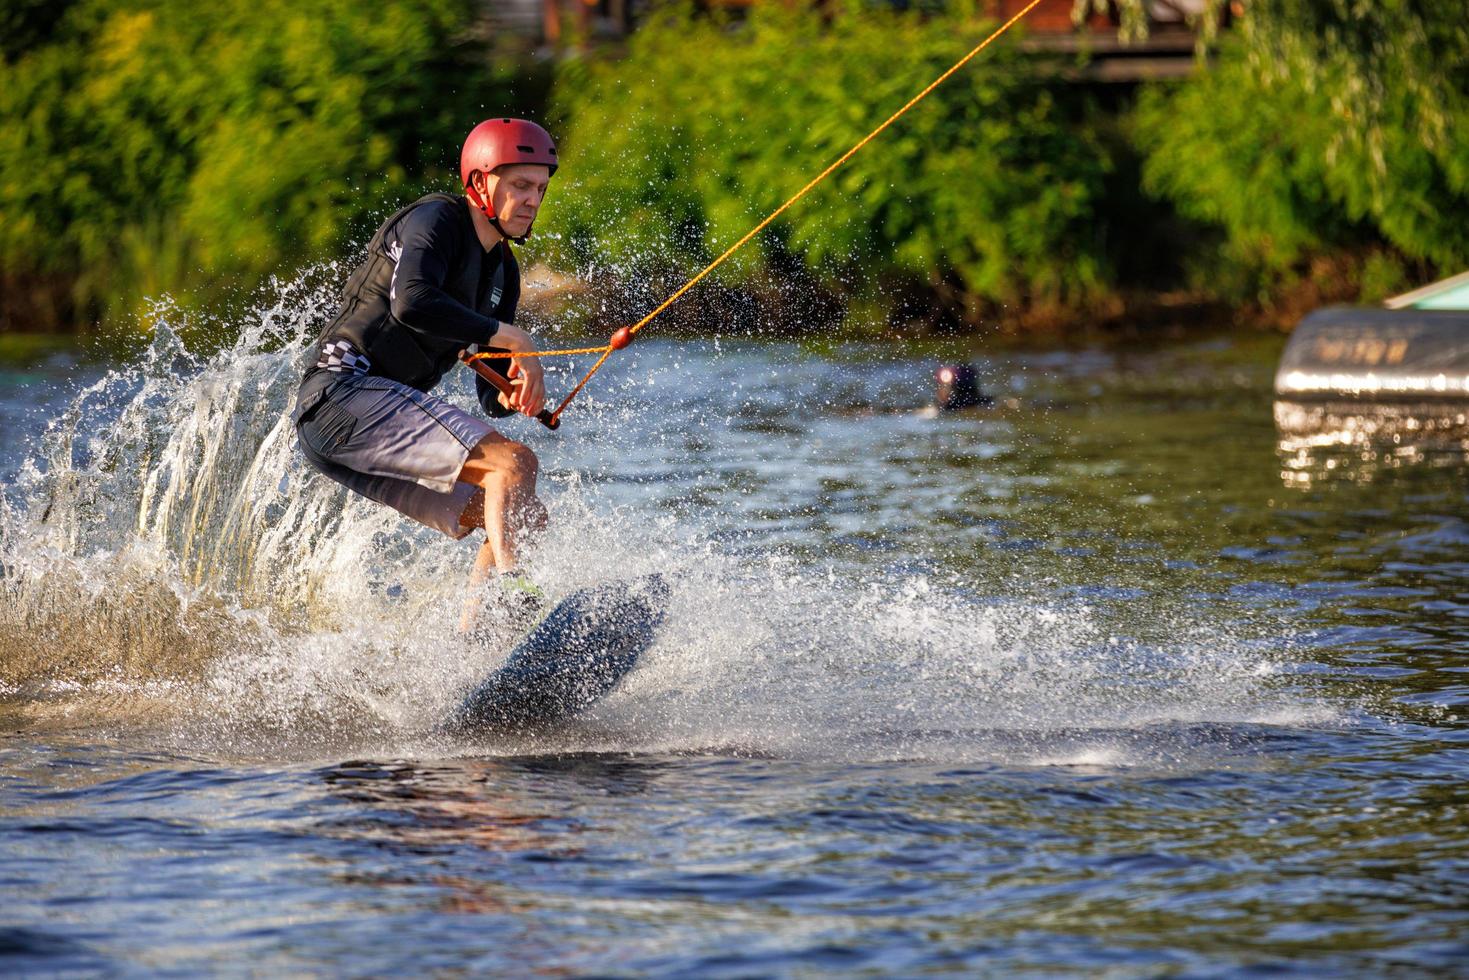 course de vitesse d'un wakeboarder sur une planche à eau un jour d'été. des éclaboussures d'eau jaillissantes d'une planche à eau. 19.06.1922. Kyiv. Ukraine. photo